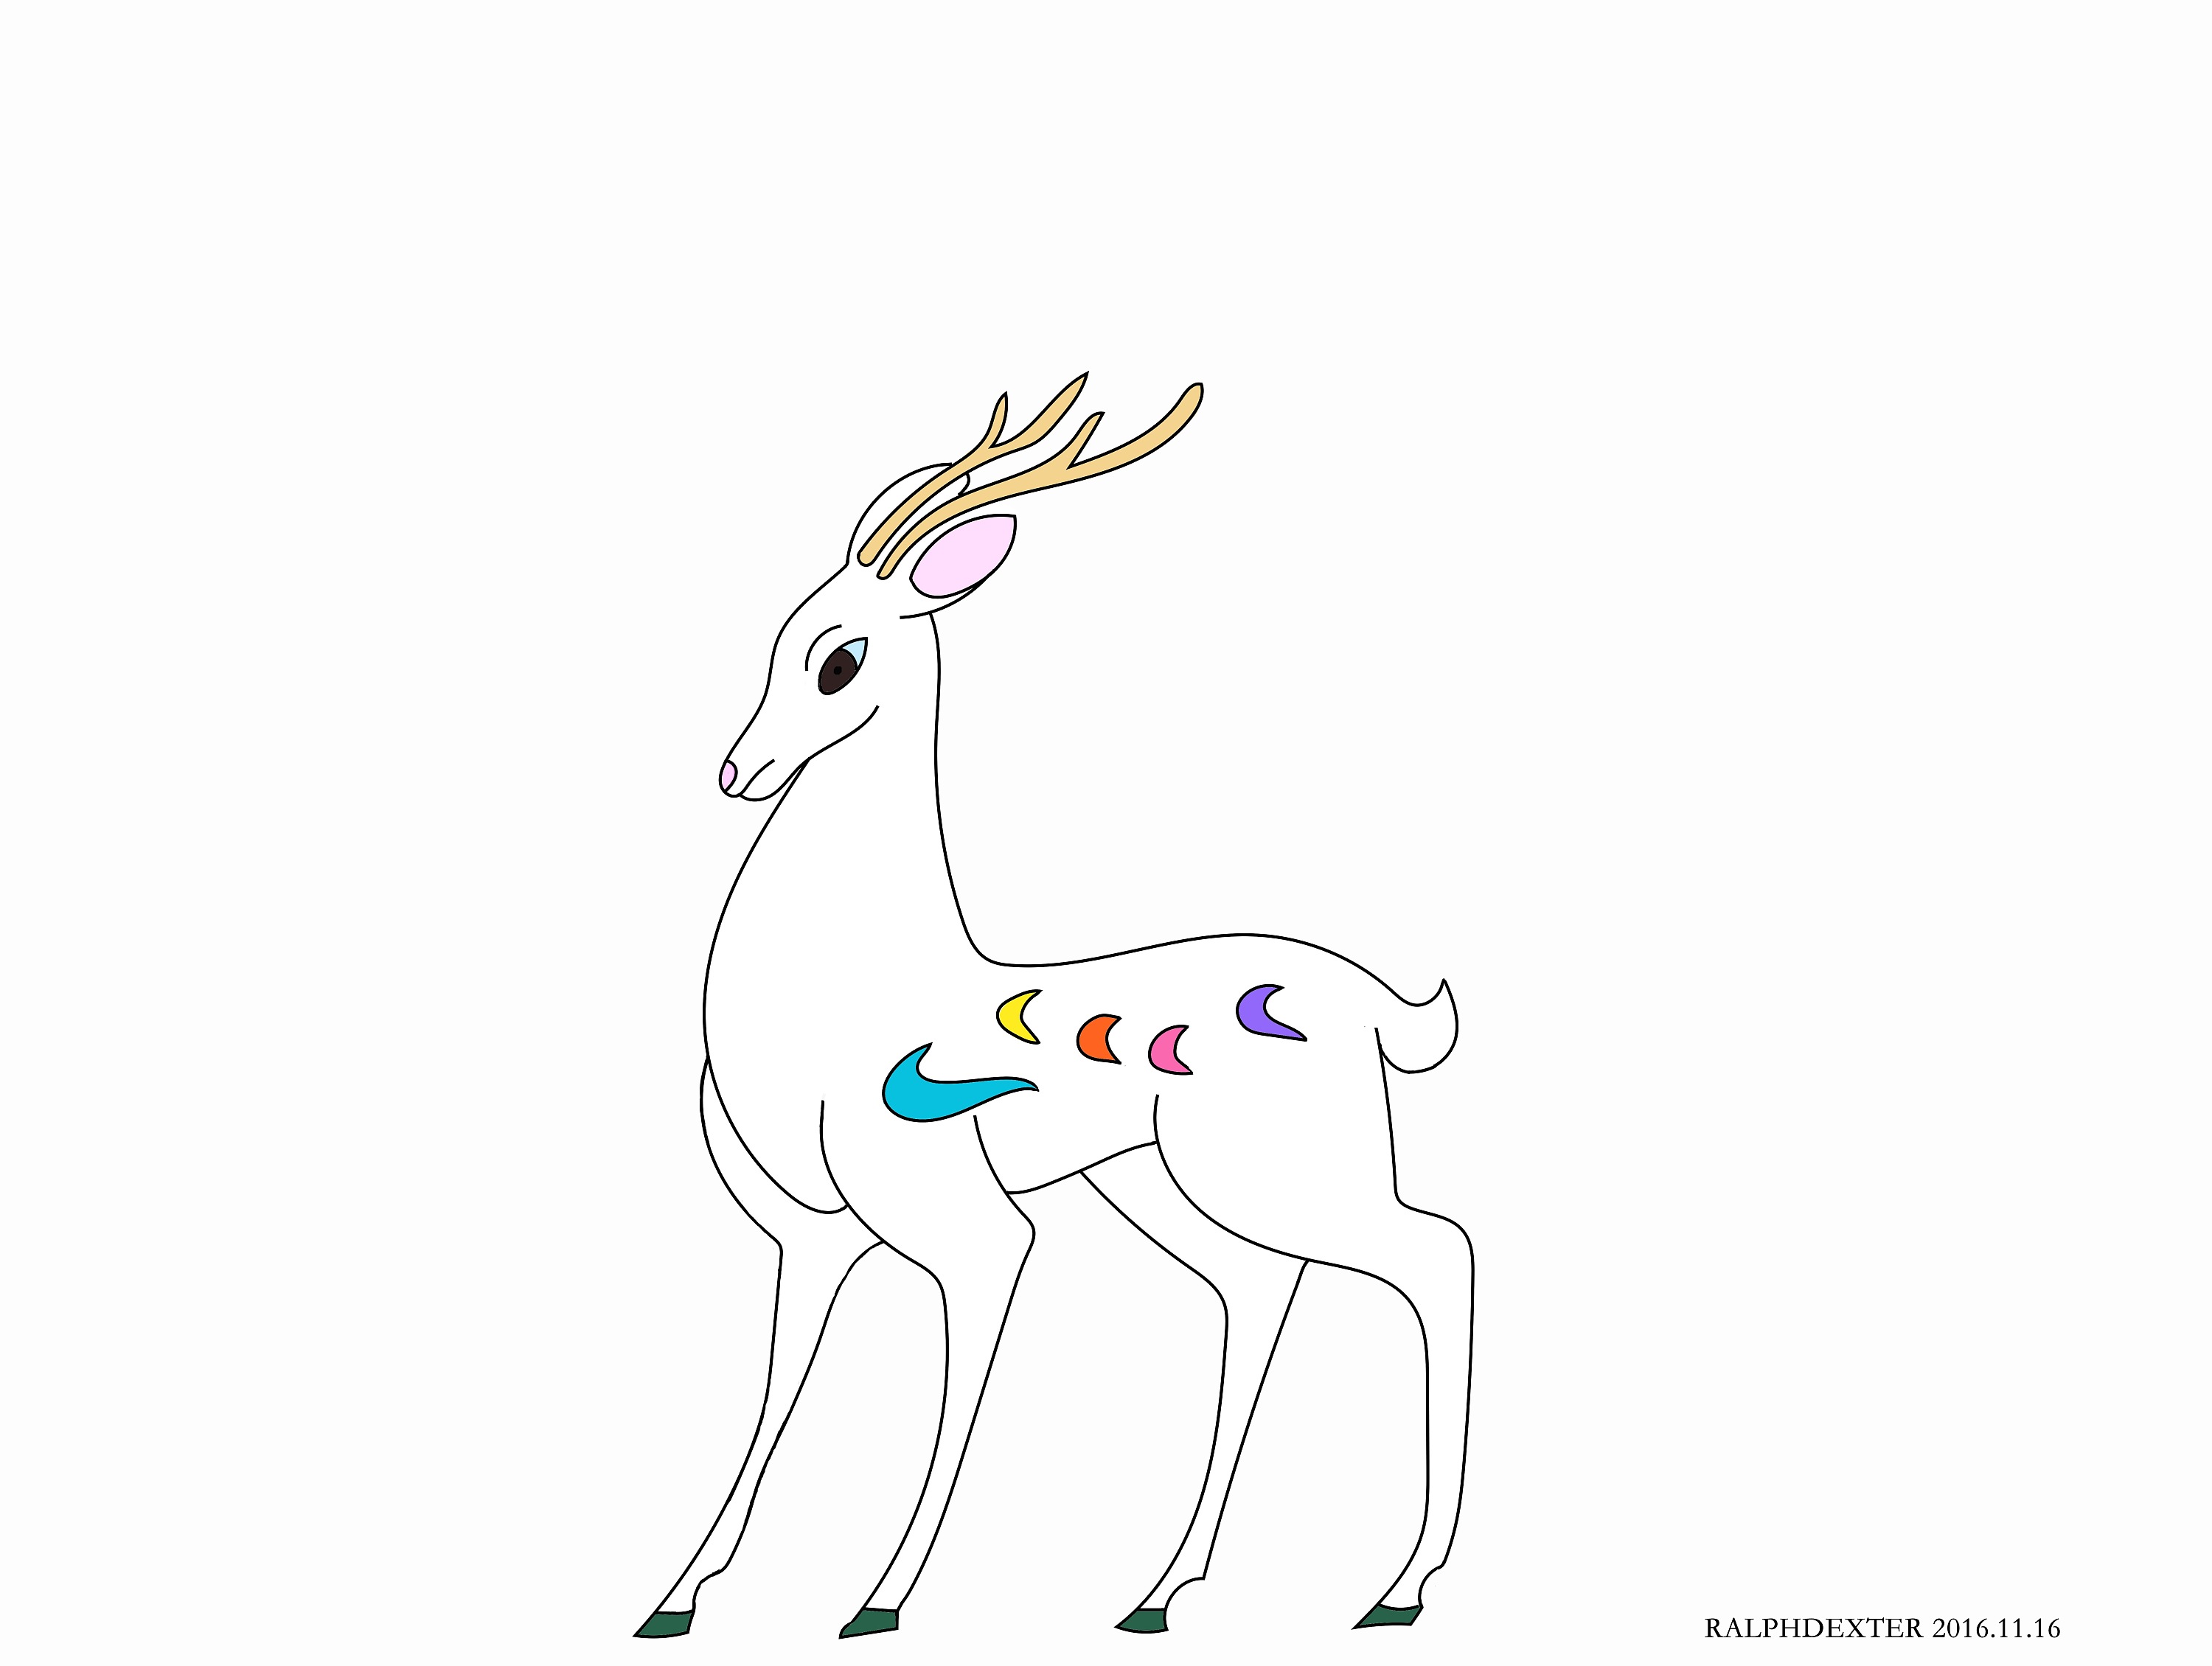 七色神鹿怎么画 简单图片